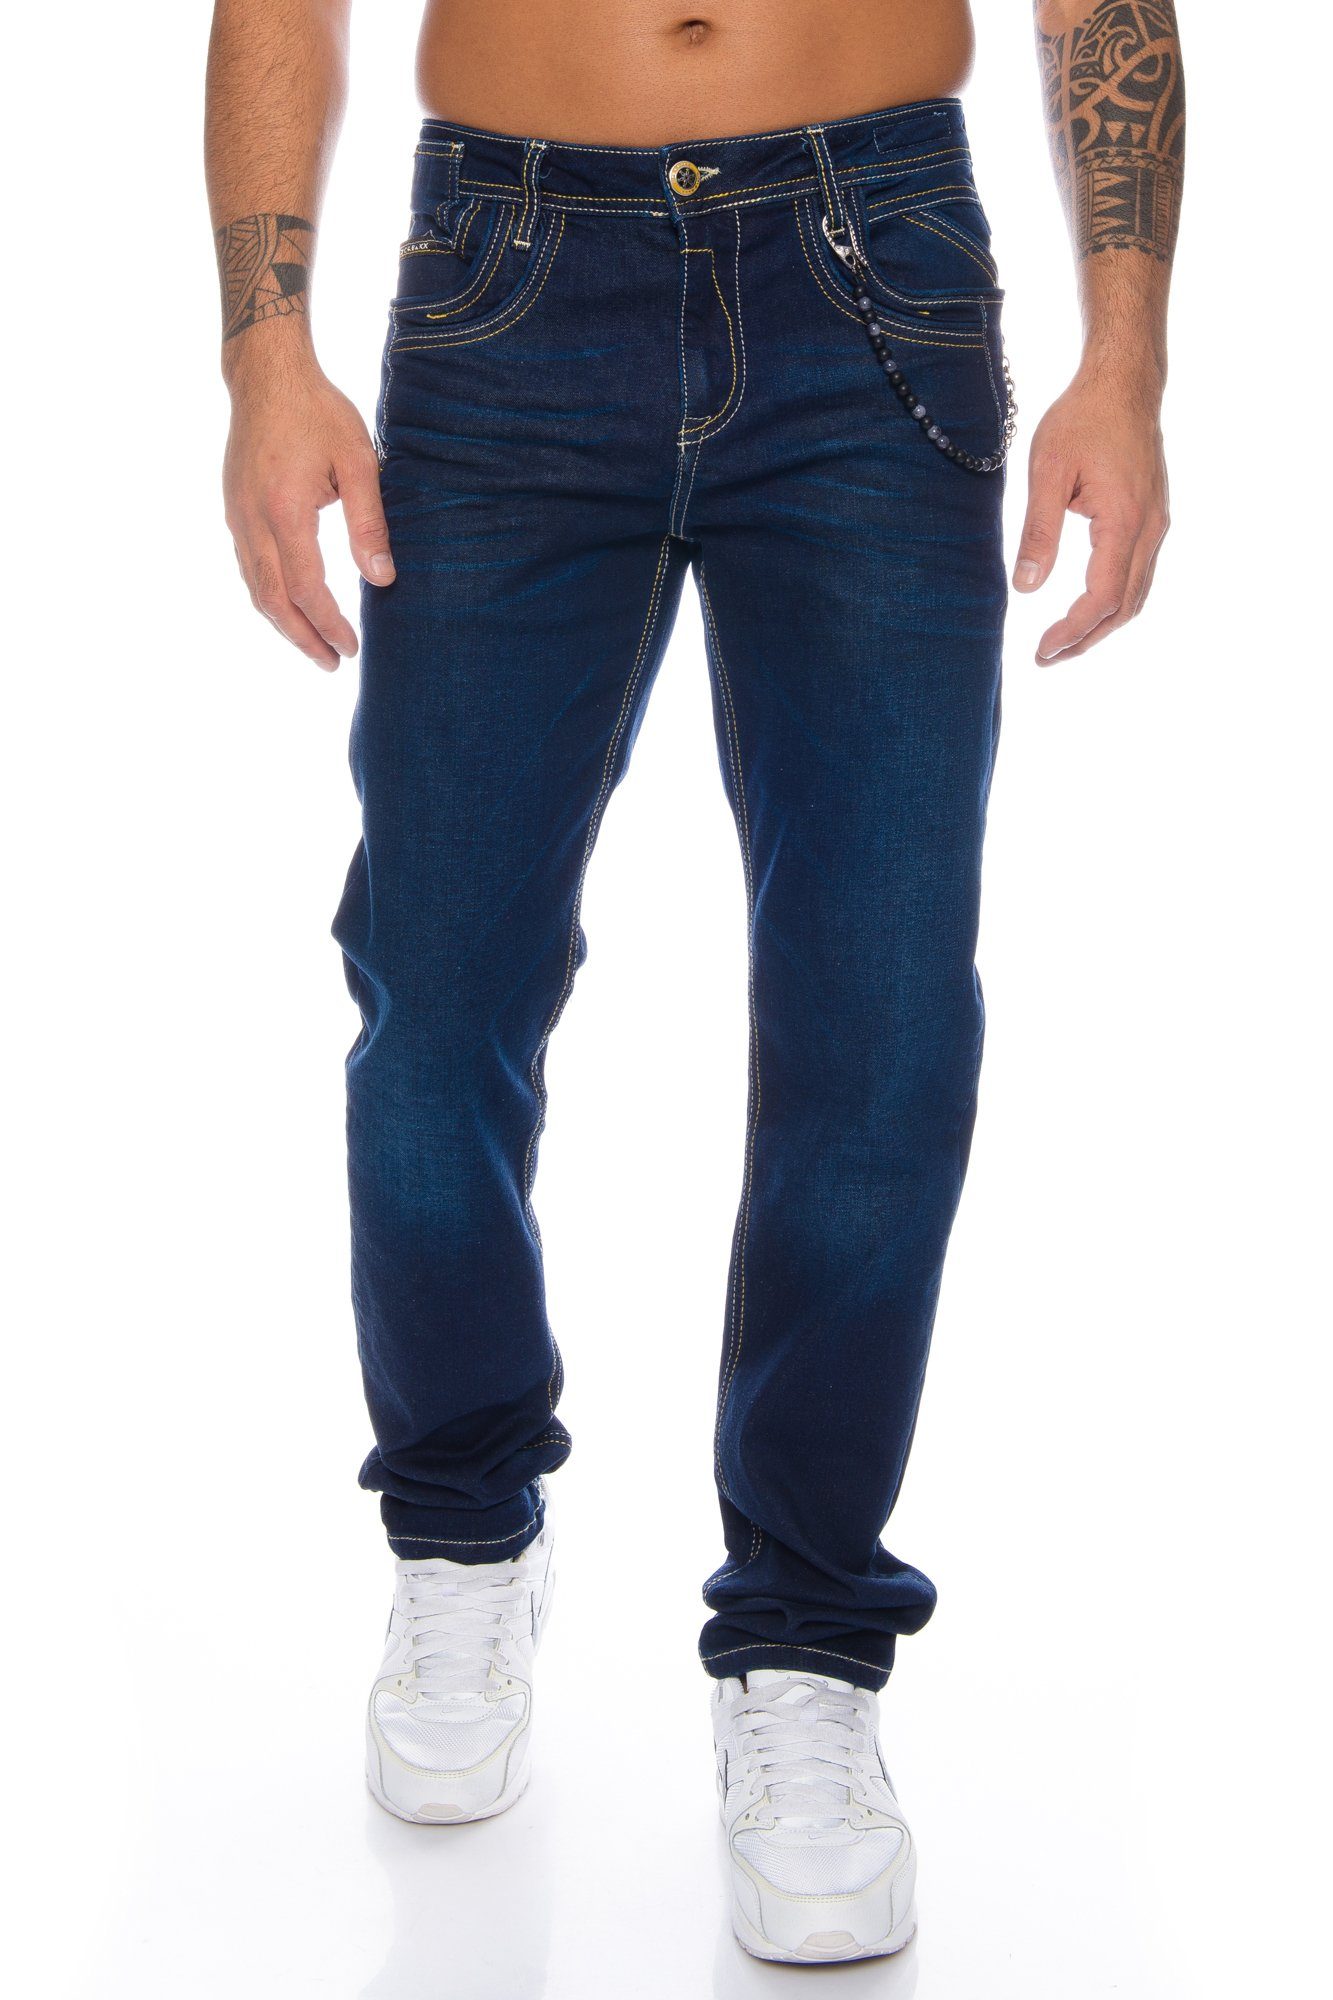 Cipo & Baxx Regular-fit-Jeans »Herren Jeans Hose mit stylischem Design und  Accessoire Kette« Dezente Kontrastnähte und hochwertiger Tragekomfort  online kaufen | OTTO